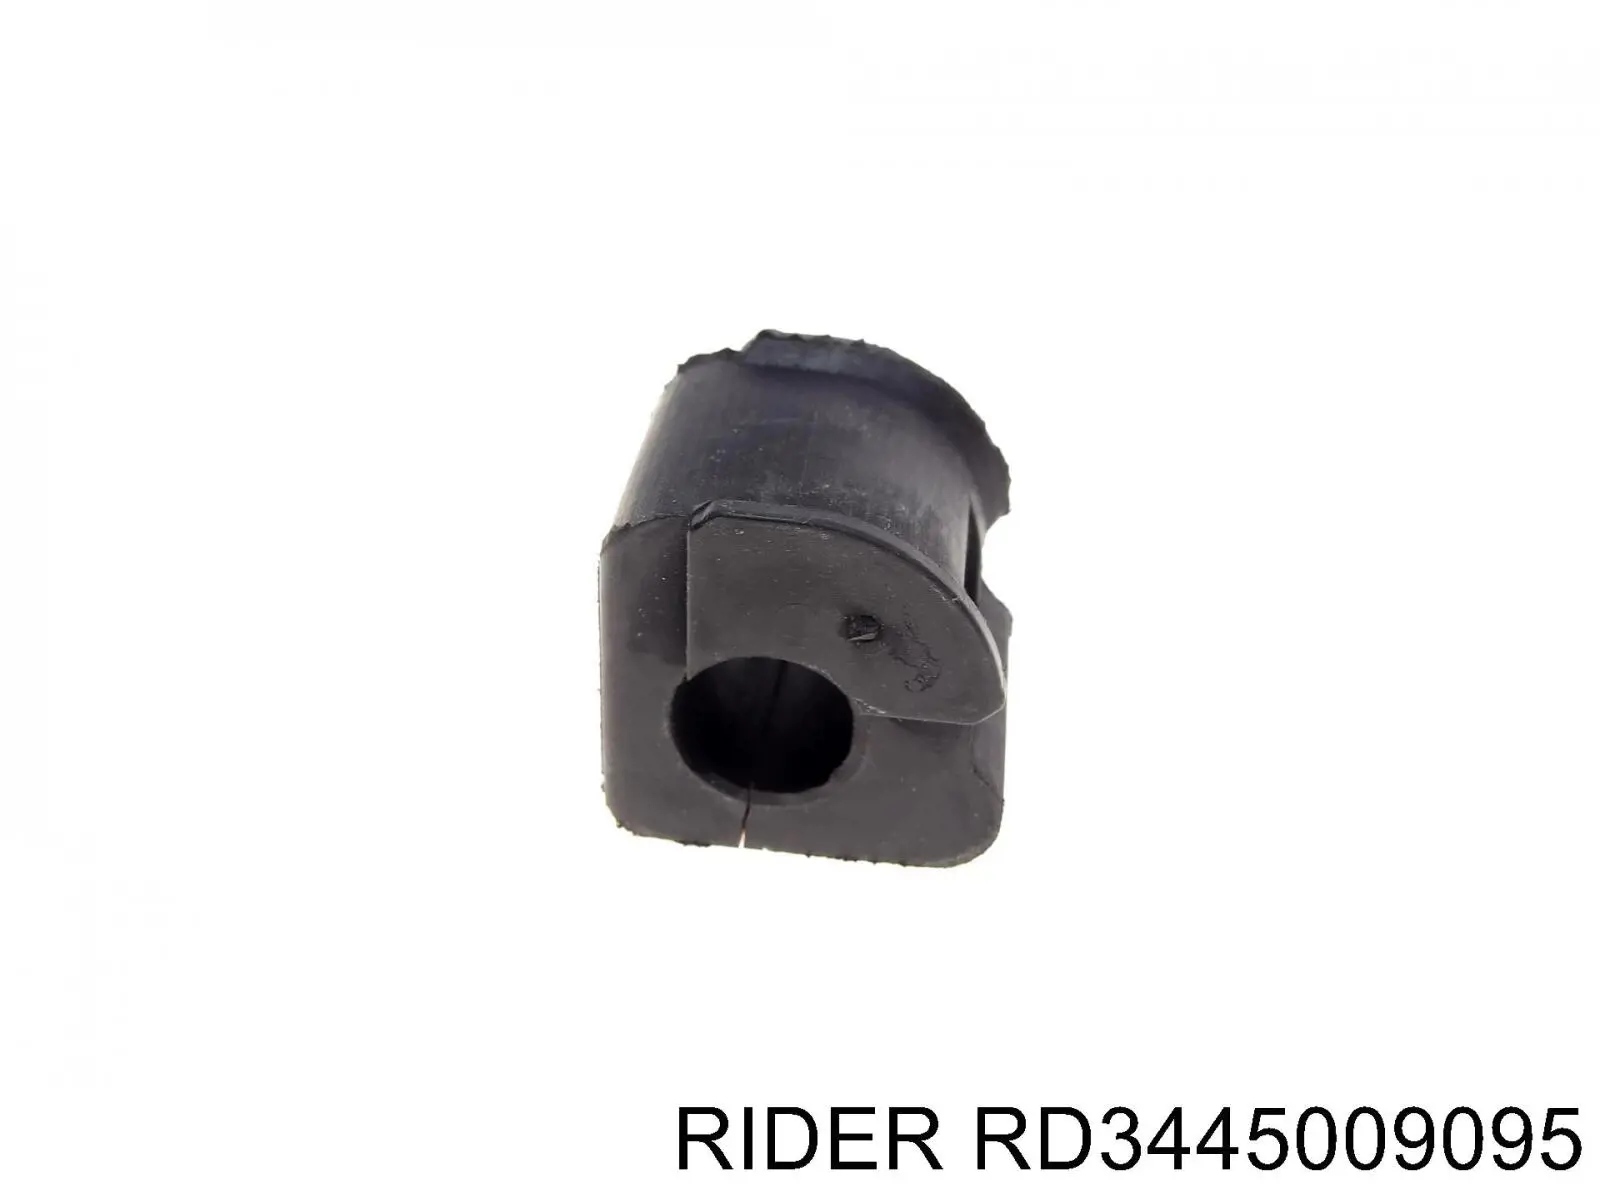 RD.3445009095 Rider casquillo del soporte de barra estabilizadora delantera